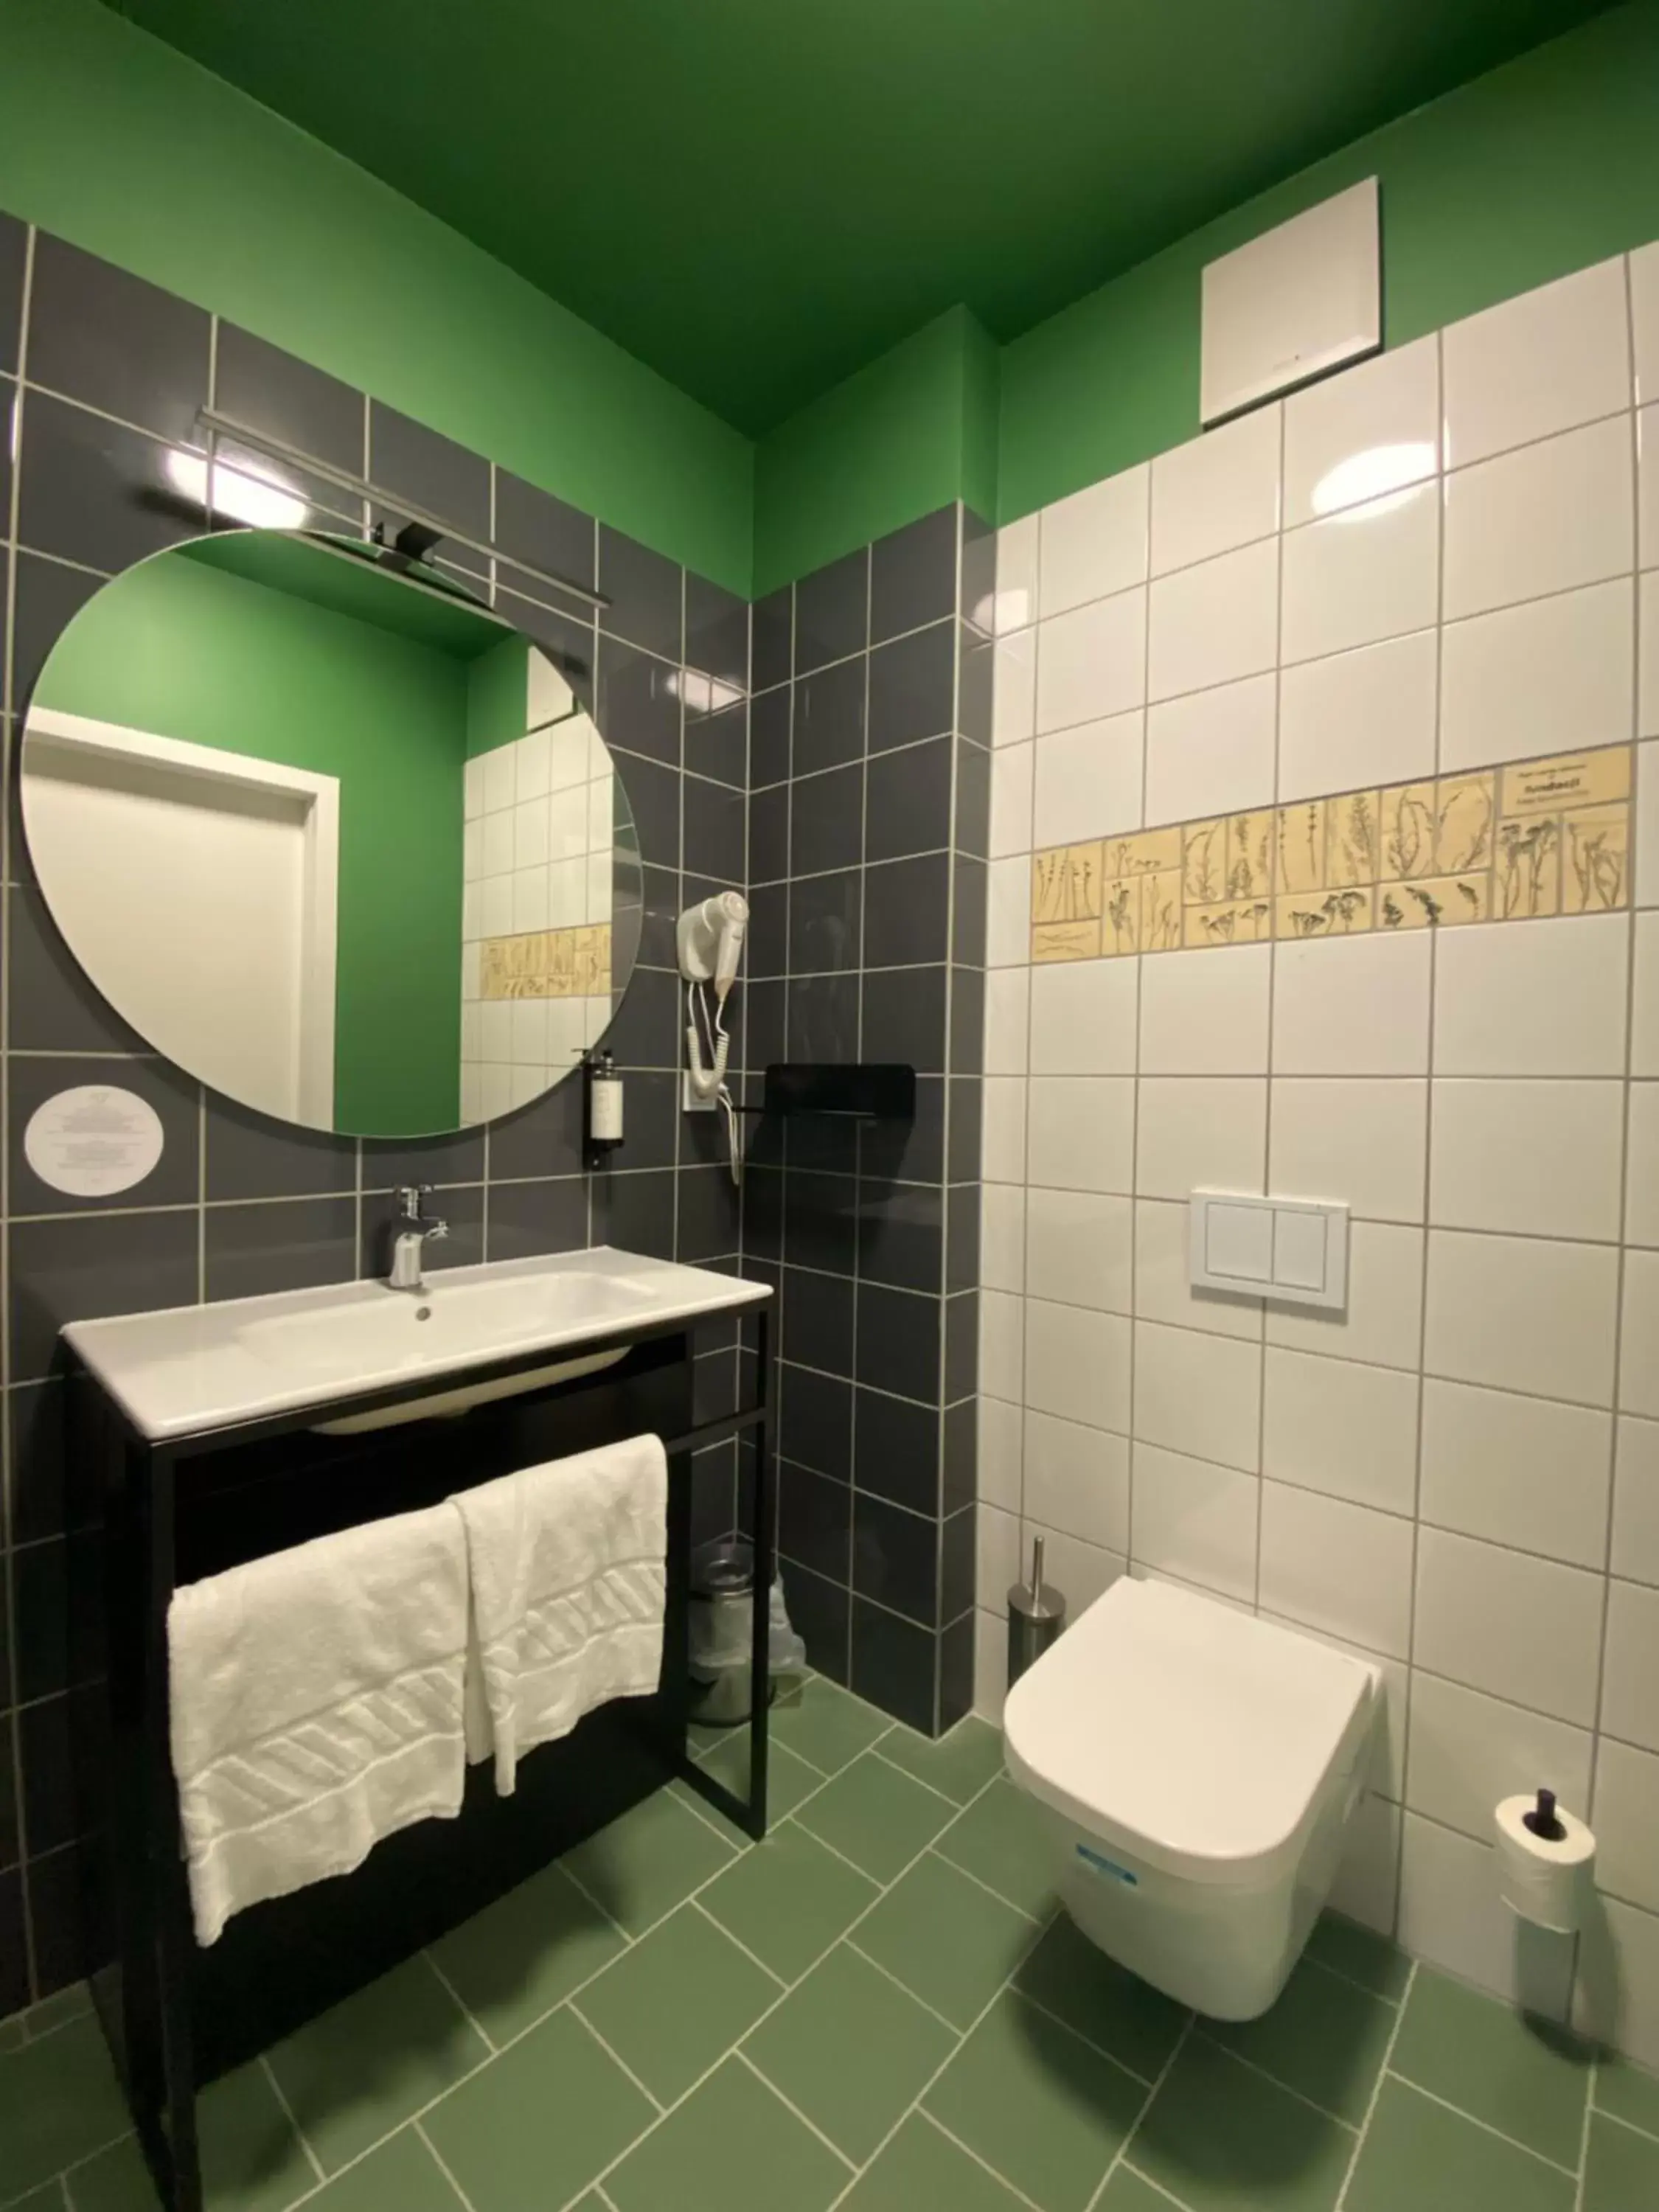 Bathroom in Arche Hotel Poloneza